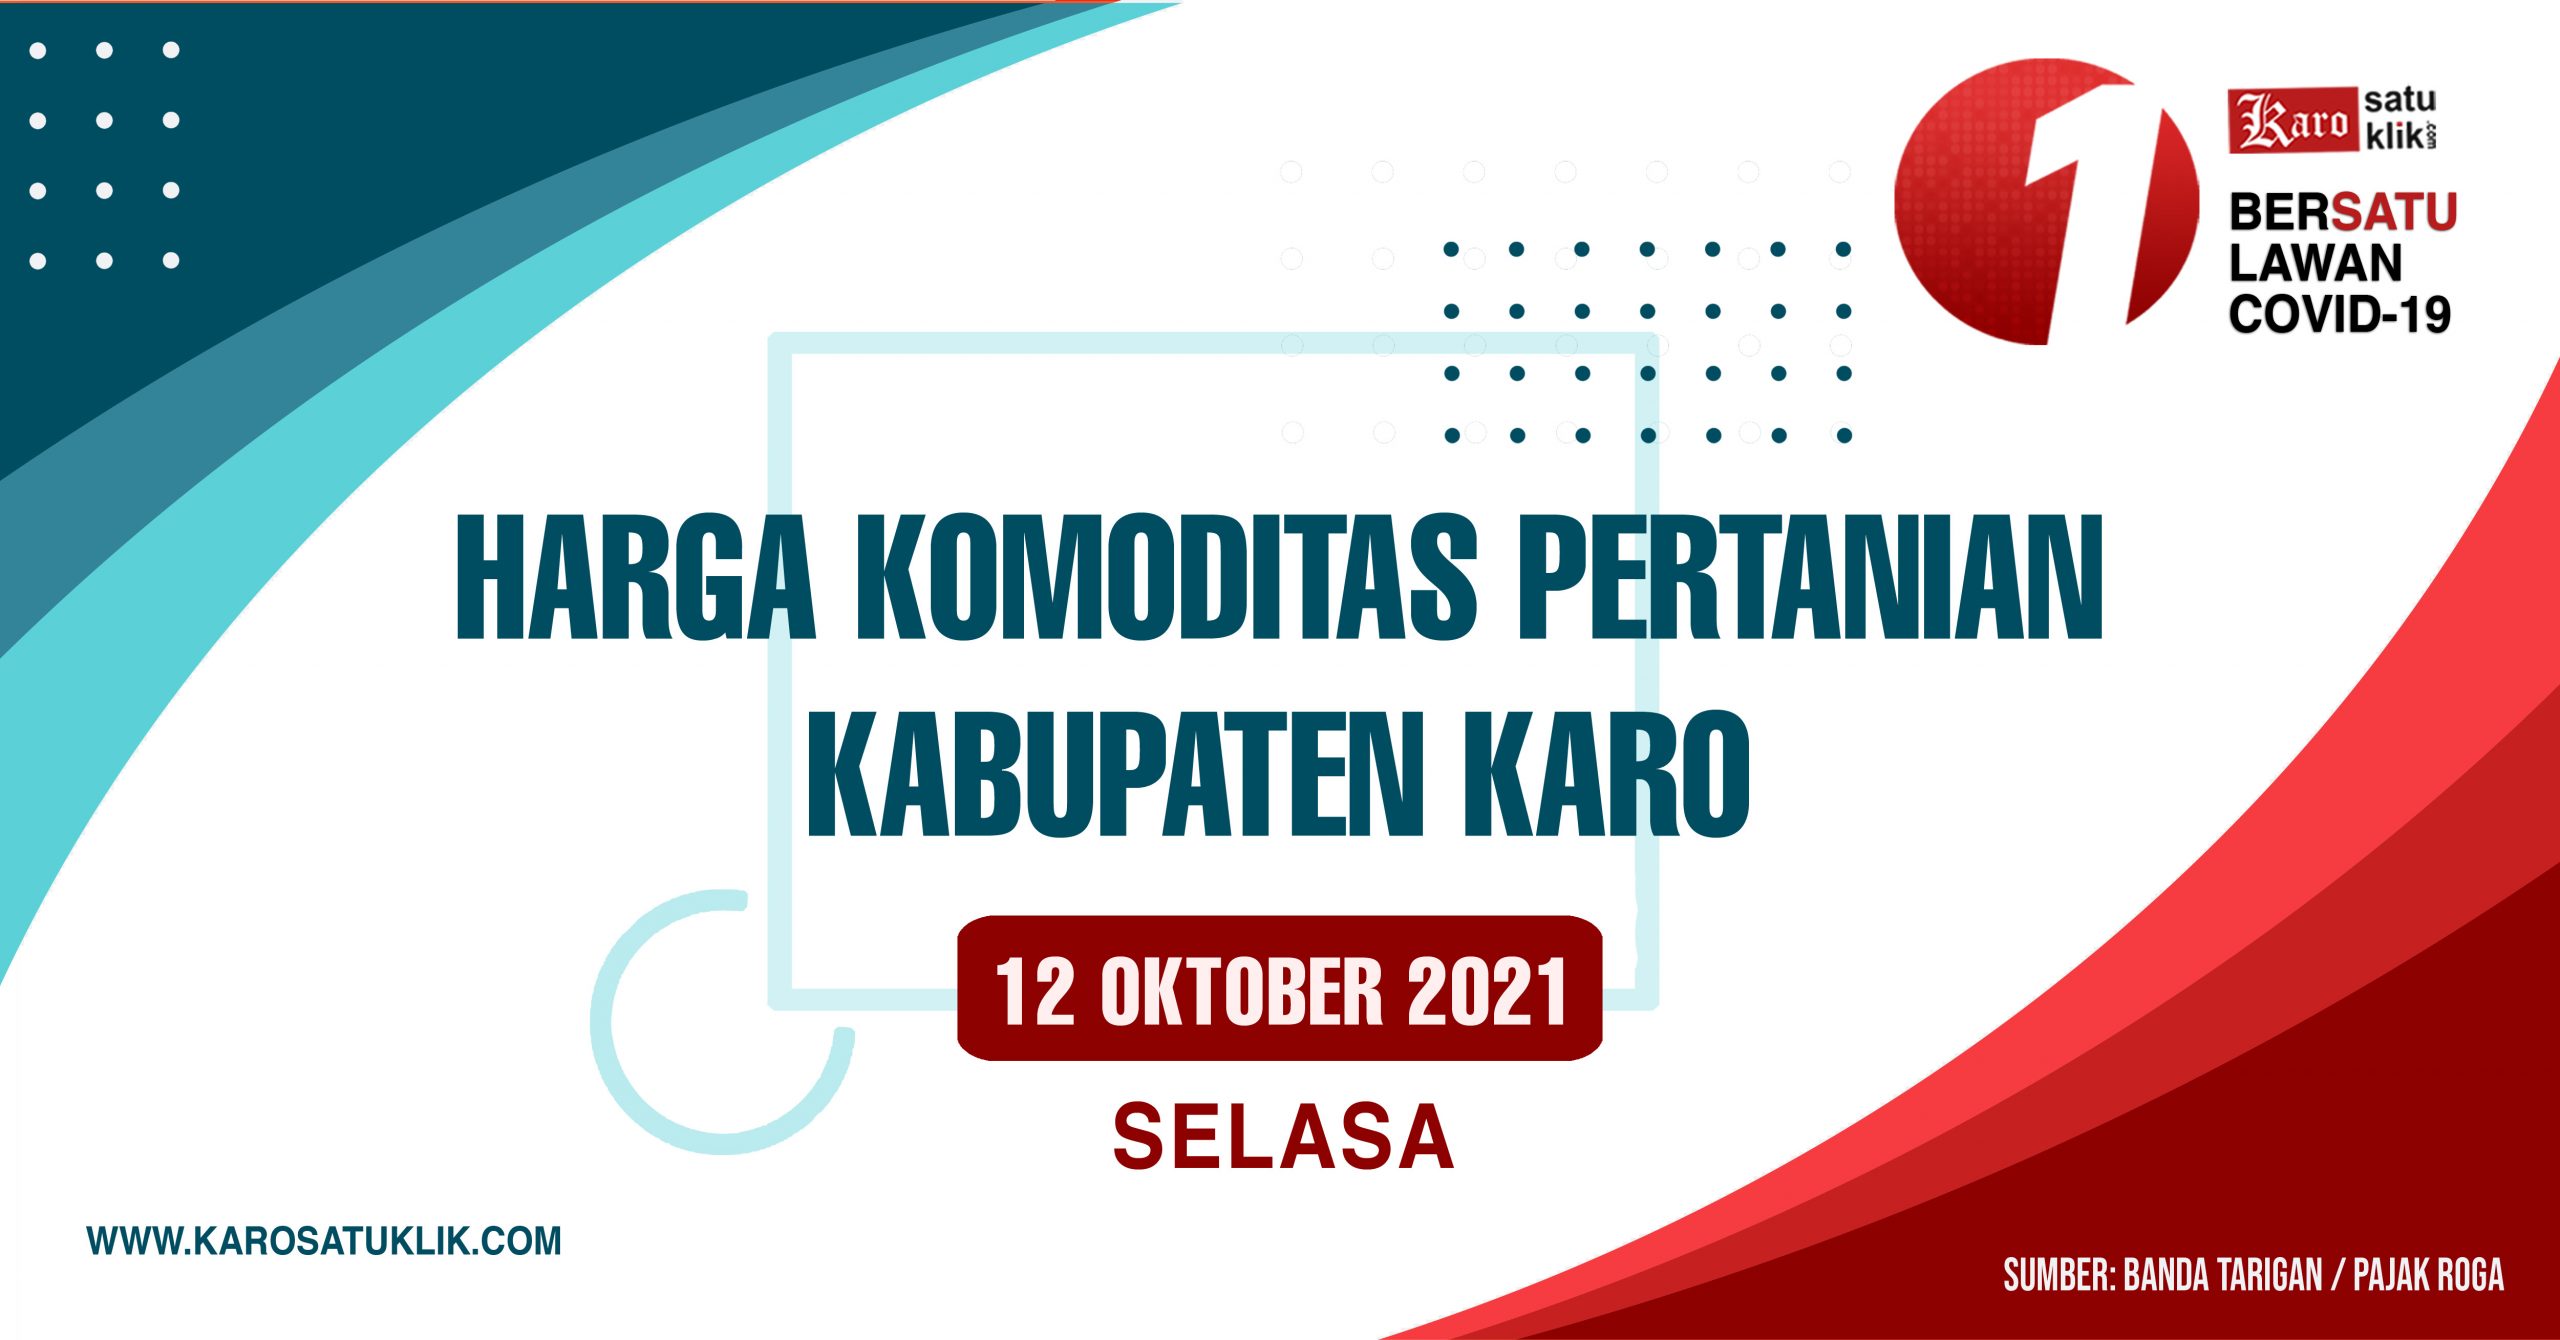 Daftar Harga Komoditas Pertanian Kabupaten Karo, 12 Oktober 2021